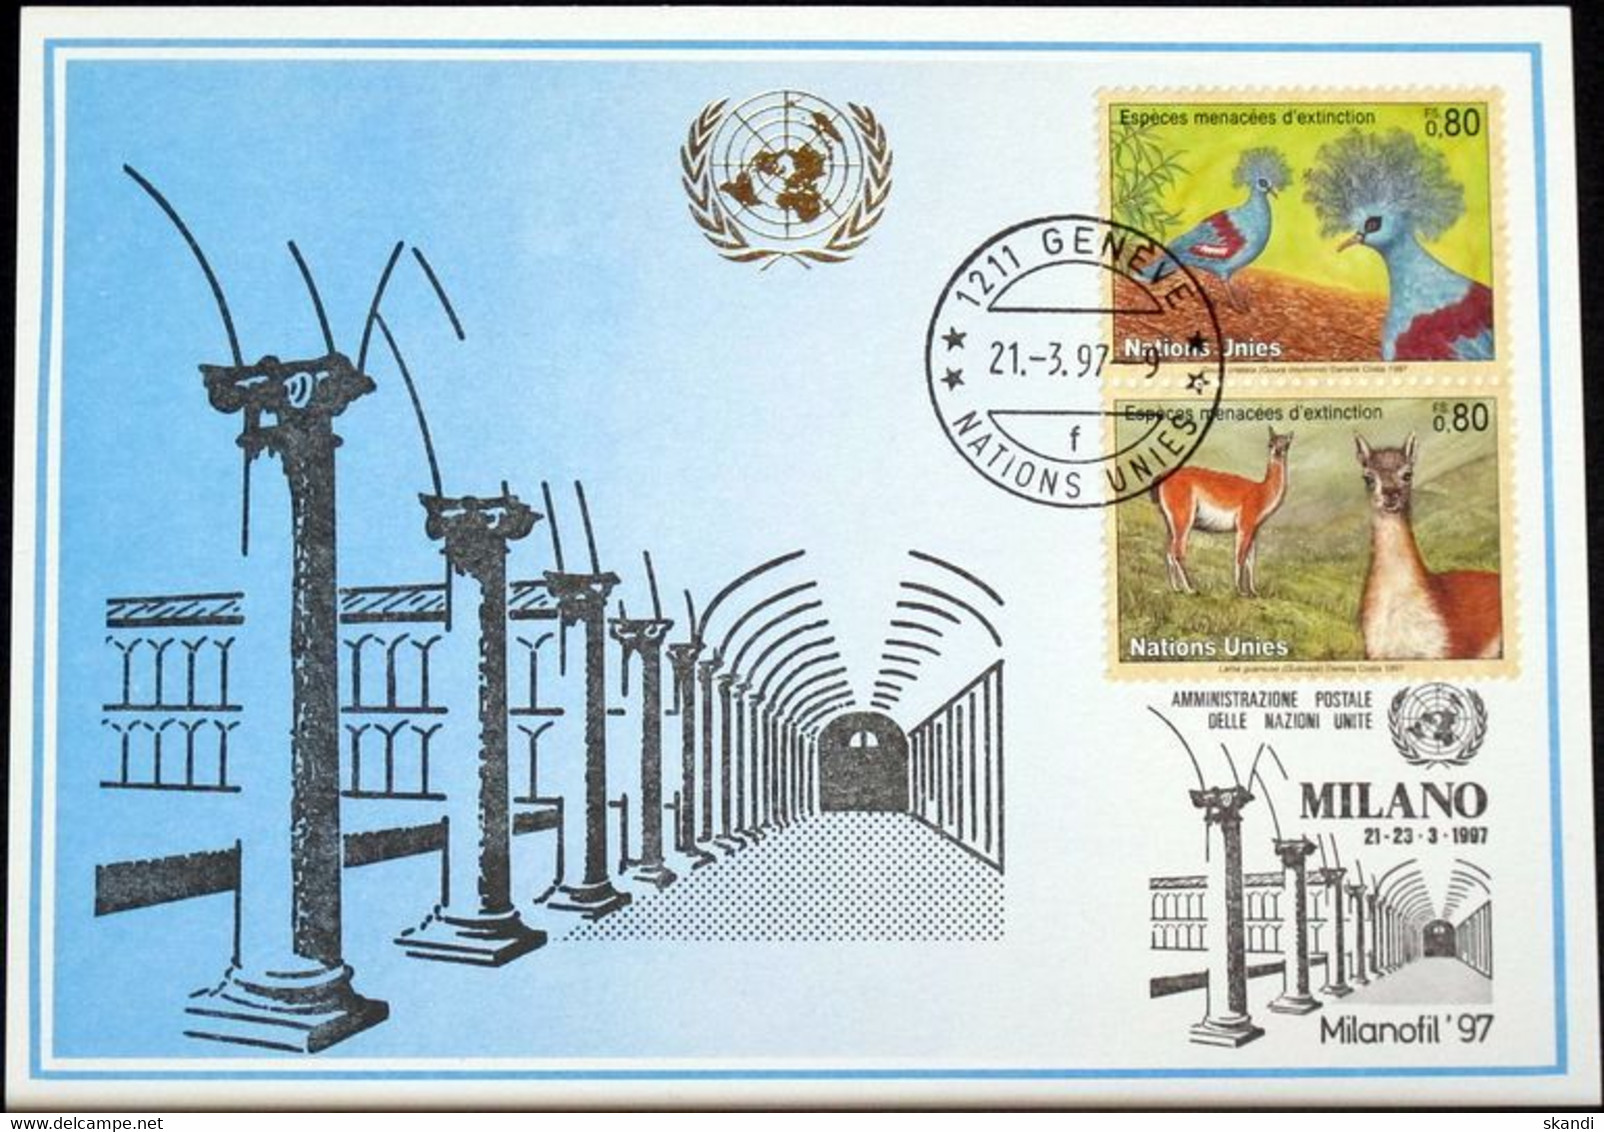 UNO GENF 1997 Mi-Nr. 277 Blaue Karte - Blue Card - Cartas & Documentos